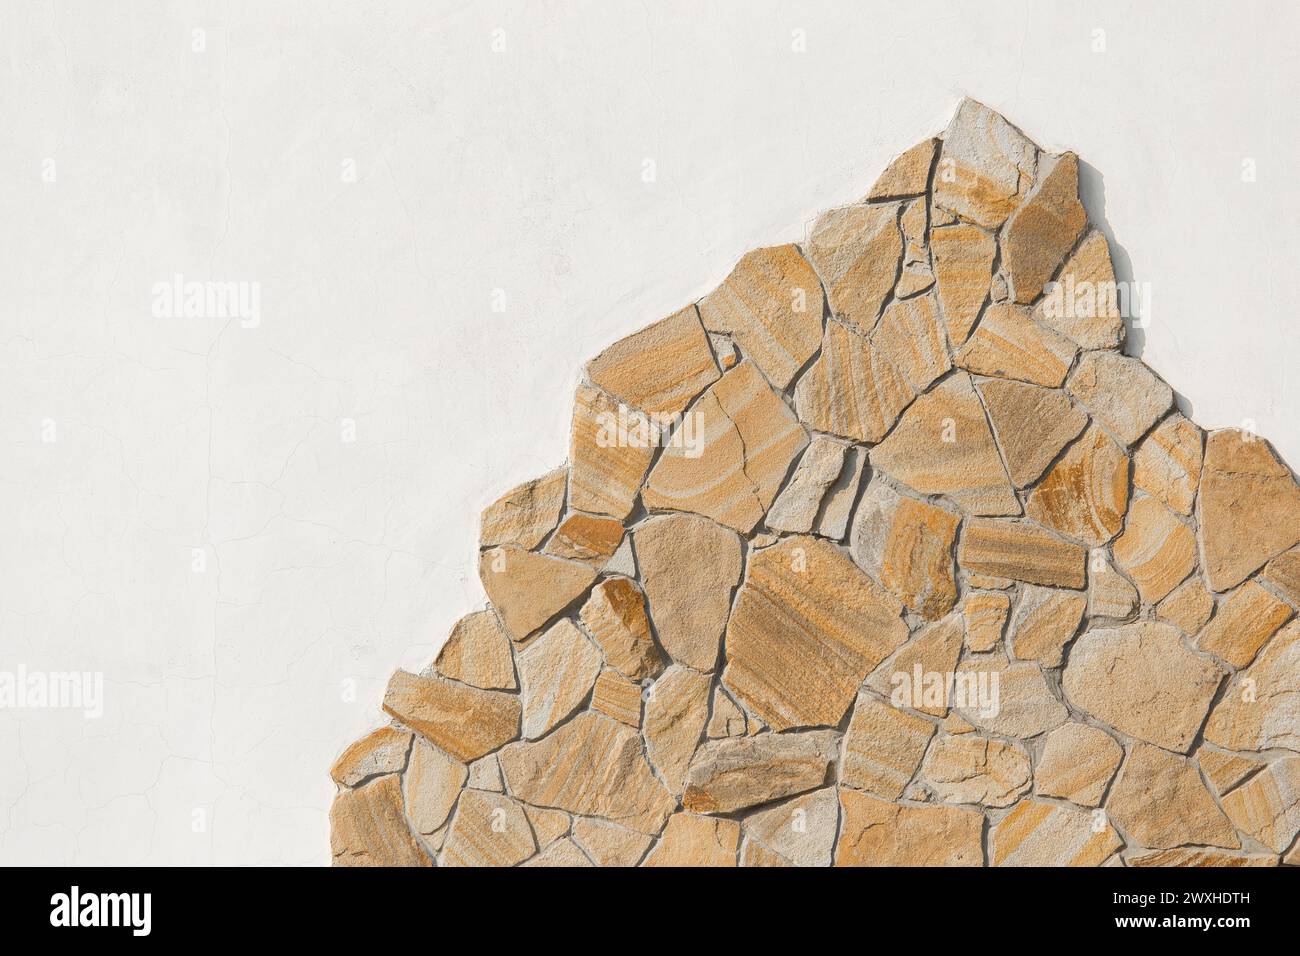 Steinprobe rauer Berggestein solides Objekt grau auf weißem hellem Wandmuster Hintergrund, leerer Raum leerer abstrakt. Stockfoto